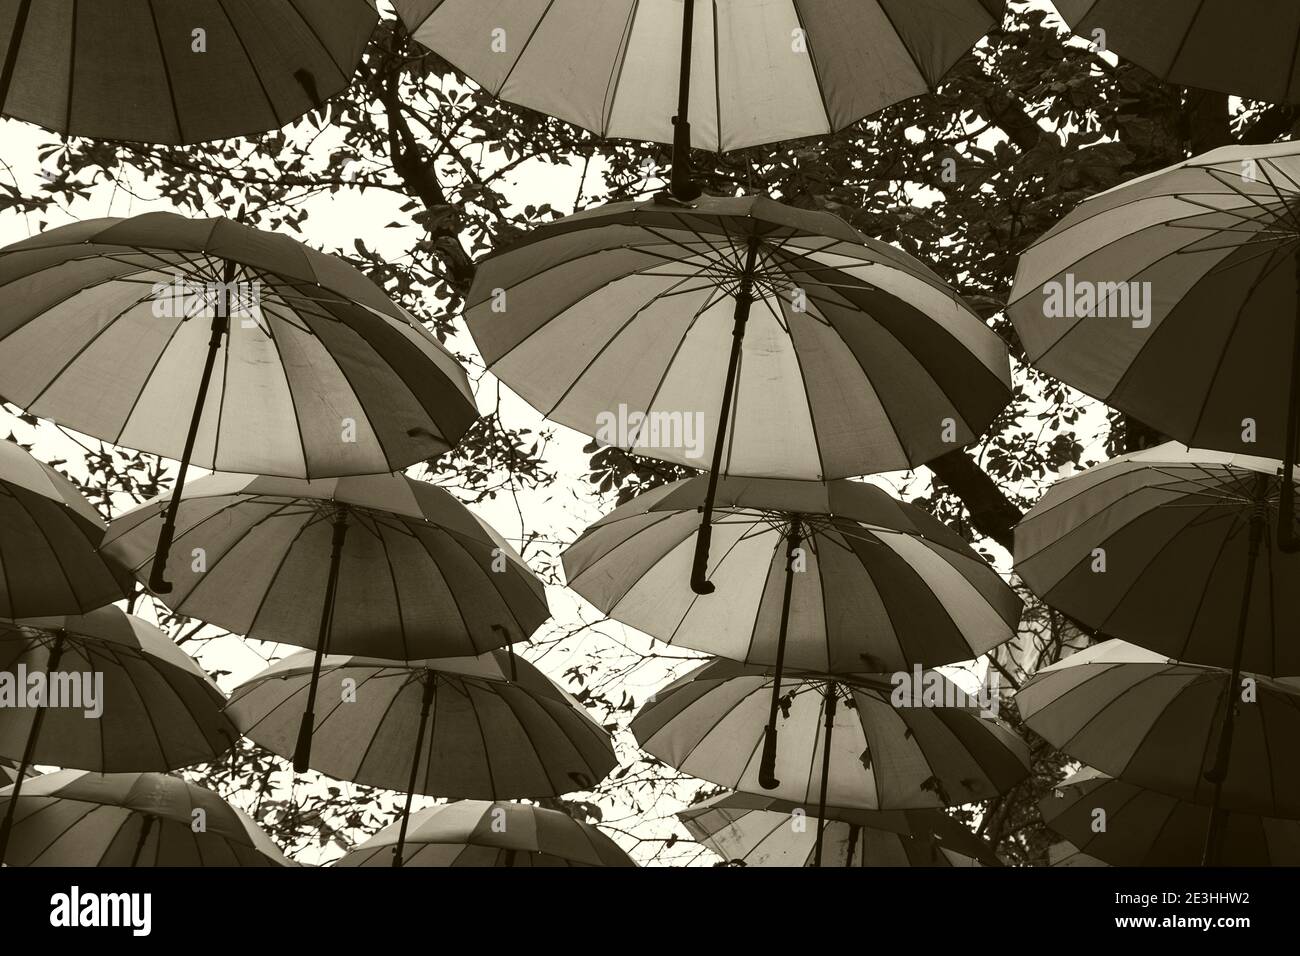 Hängender Regenschirm in der Pariser Straße. Paris, Frankreich.  Nahaufnahme. Herbsturlaub Konzept. Vintage Nostalgie Hintergrund.  Sepia-Foto Stockfotografie - Alamy